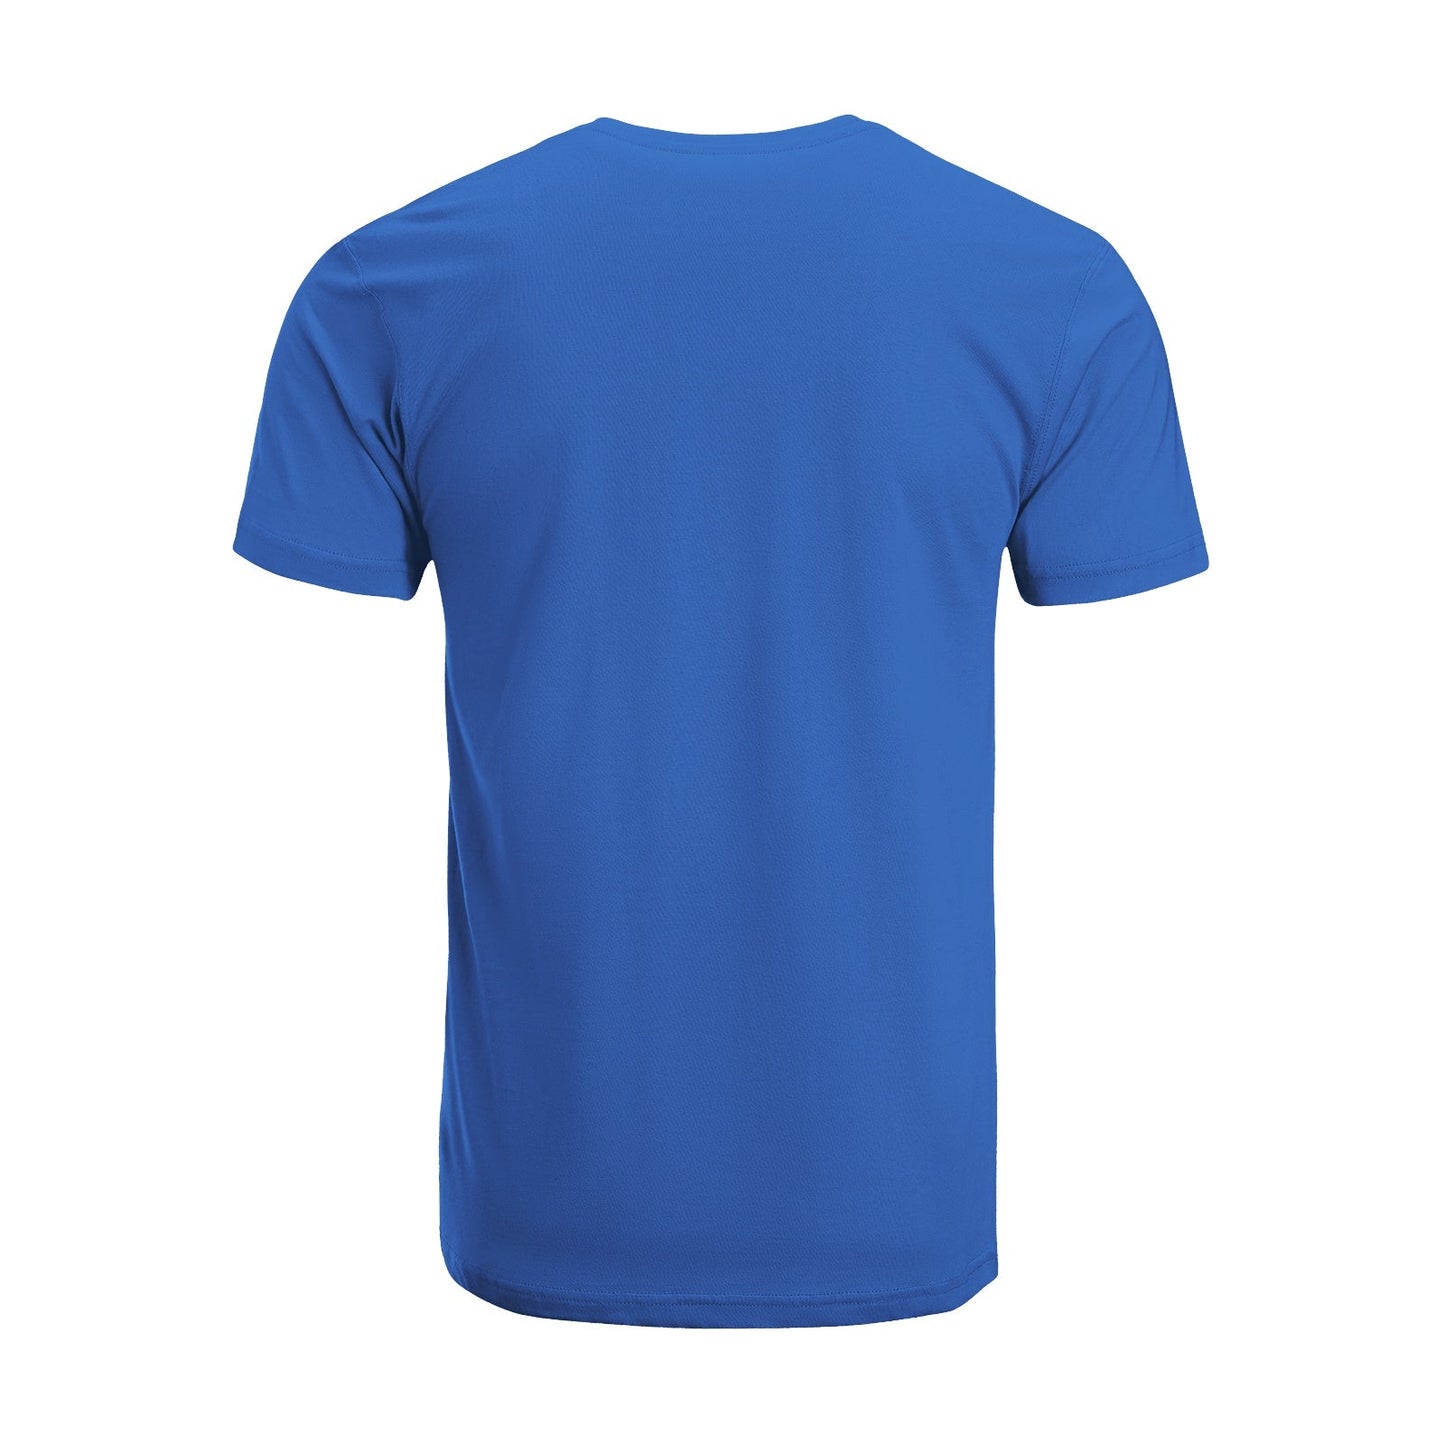 Unisex Short Sleeve Crew Neck Cotton Jersey T-Shirt TRUCK 50